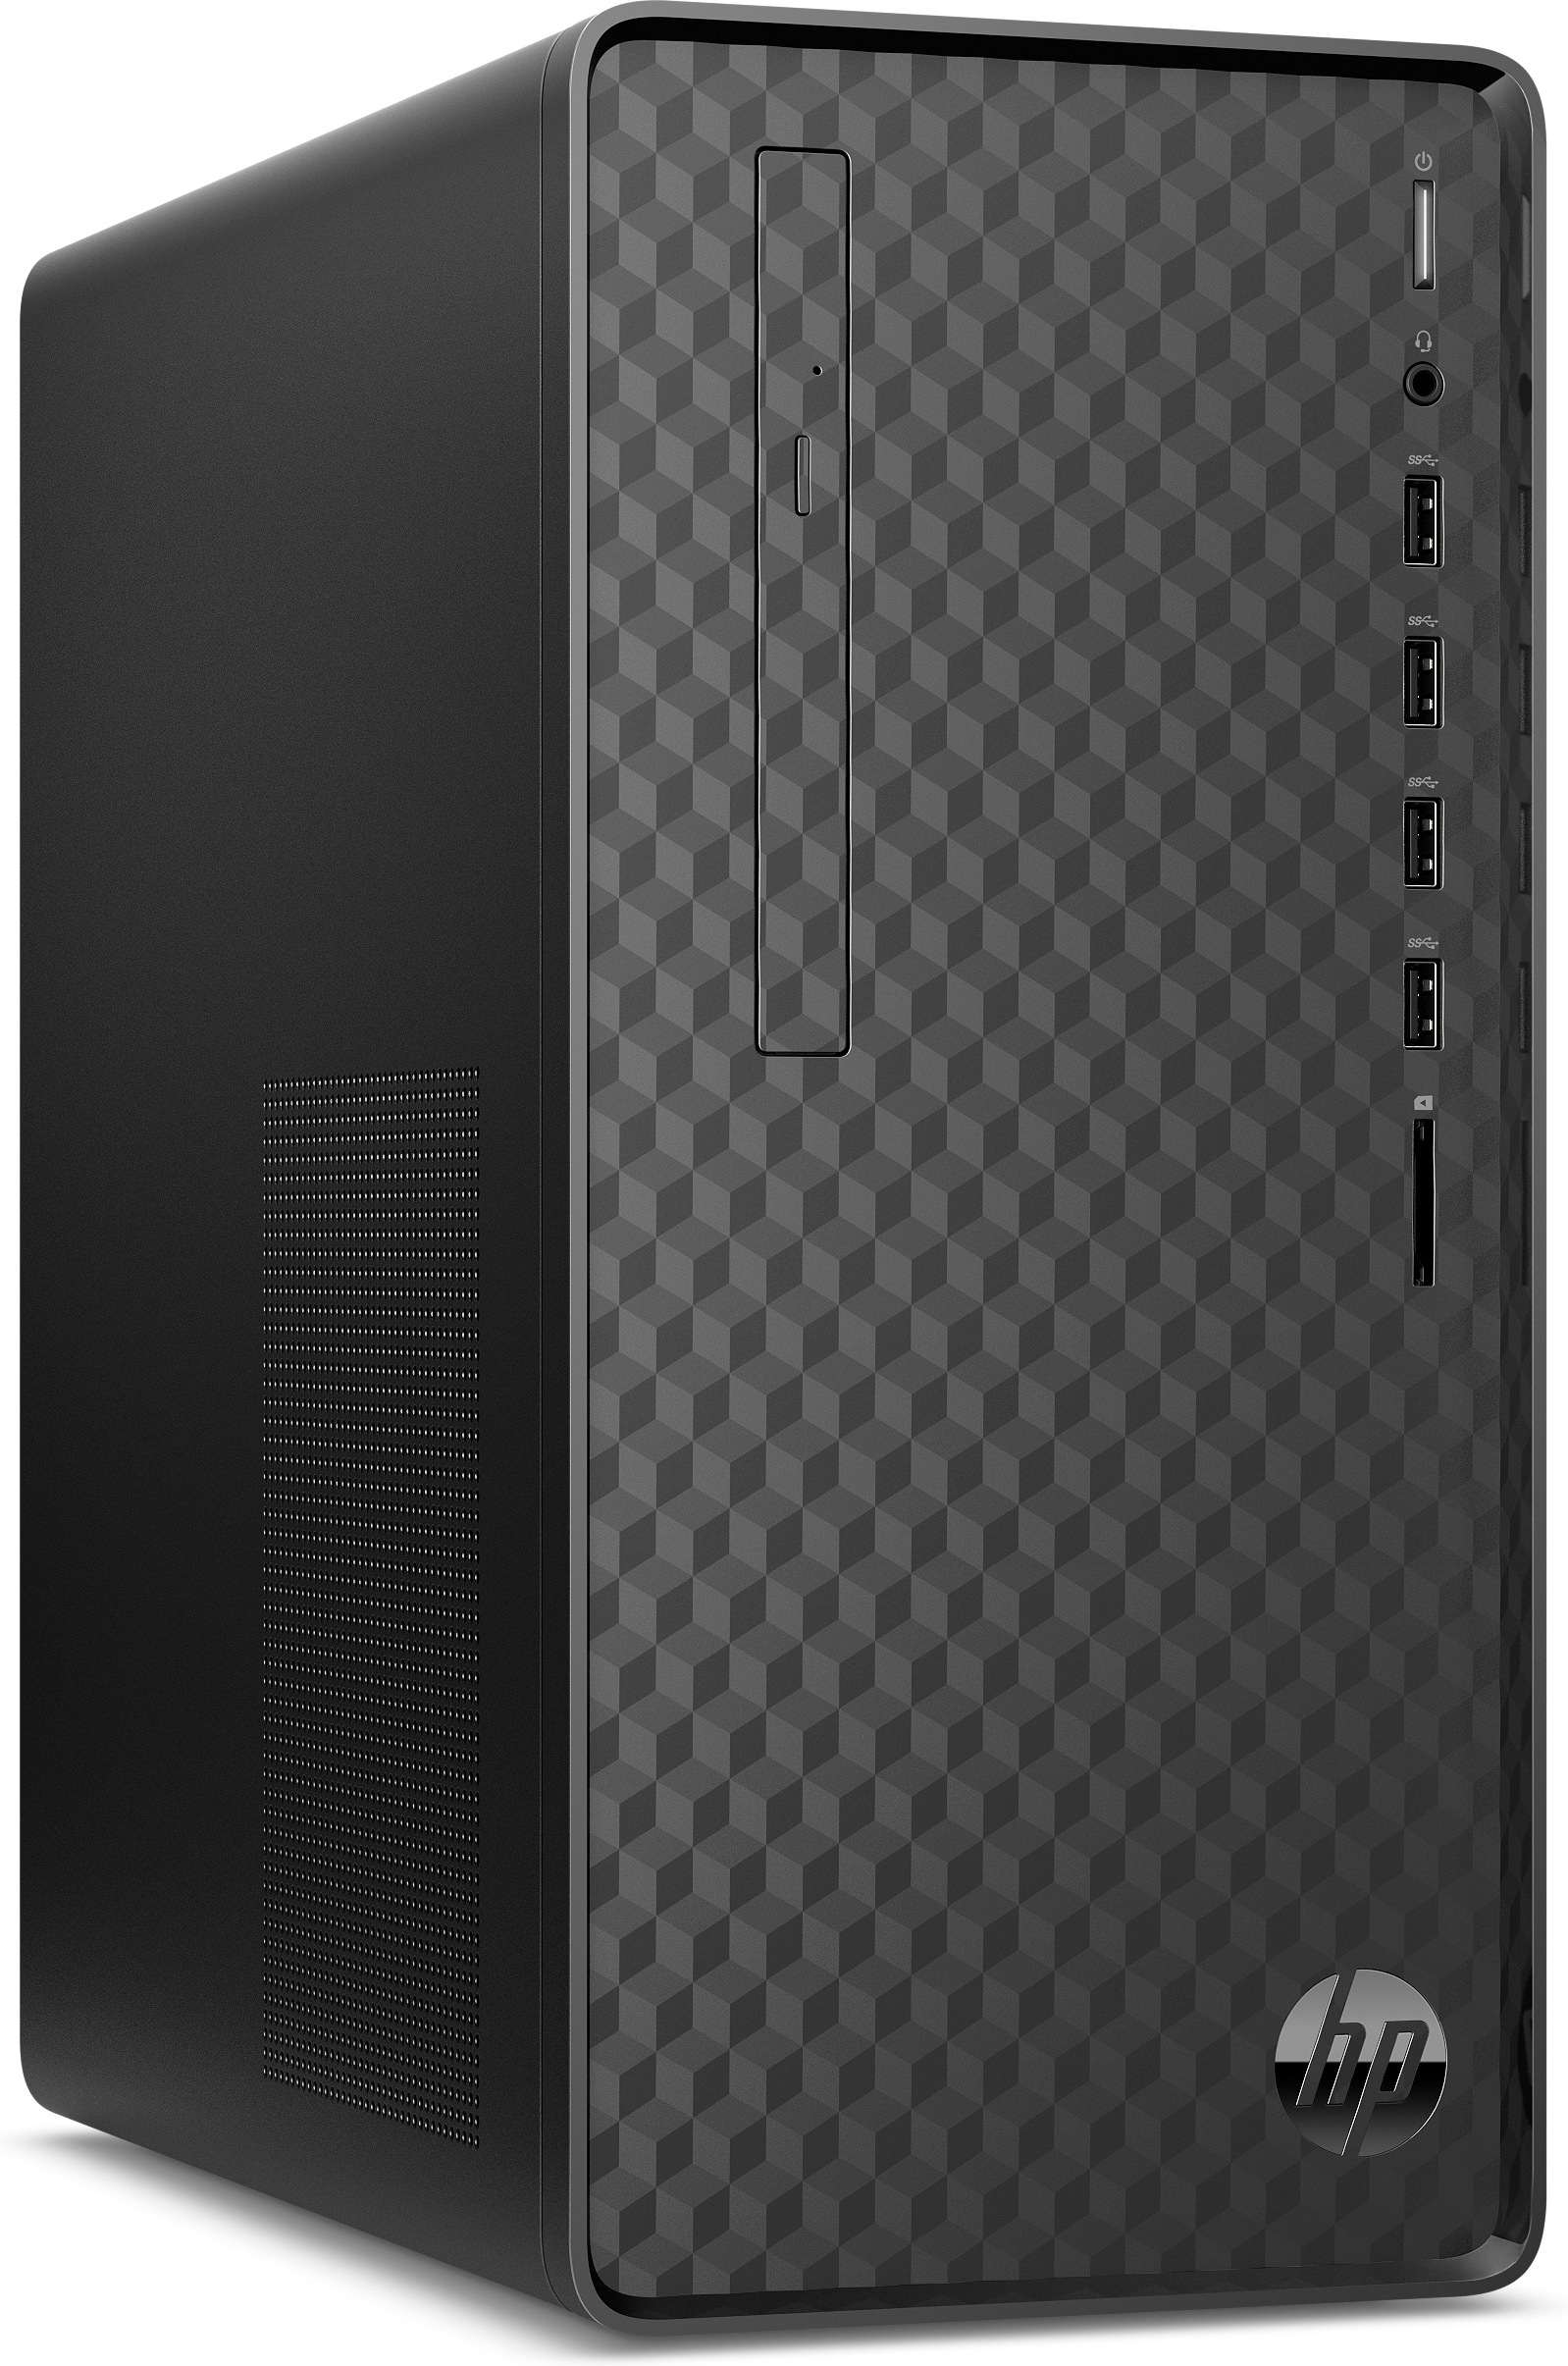 HP PC »M01-F3002ng 5600G Mini Tower«